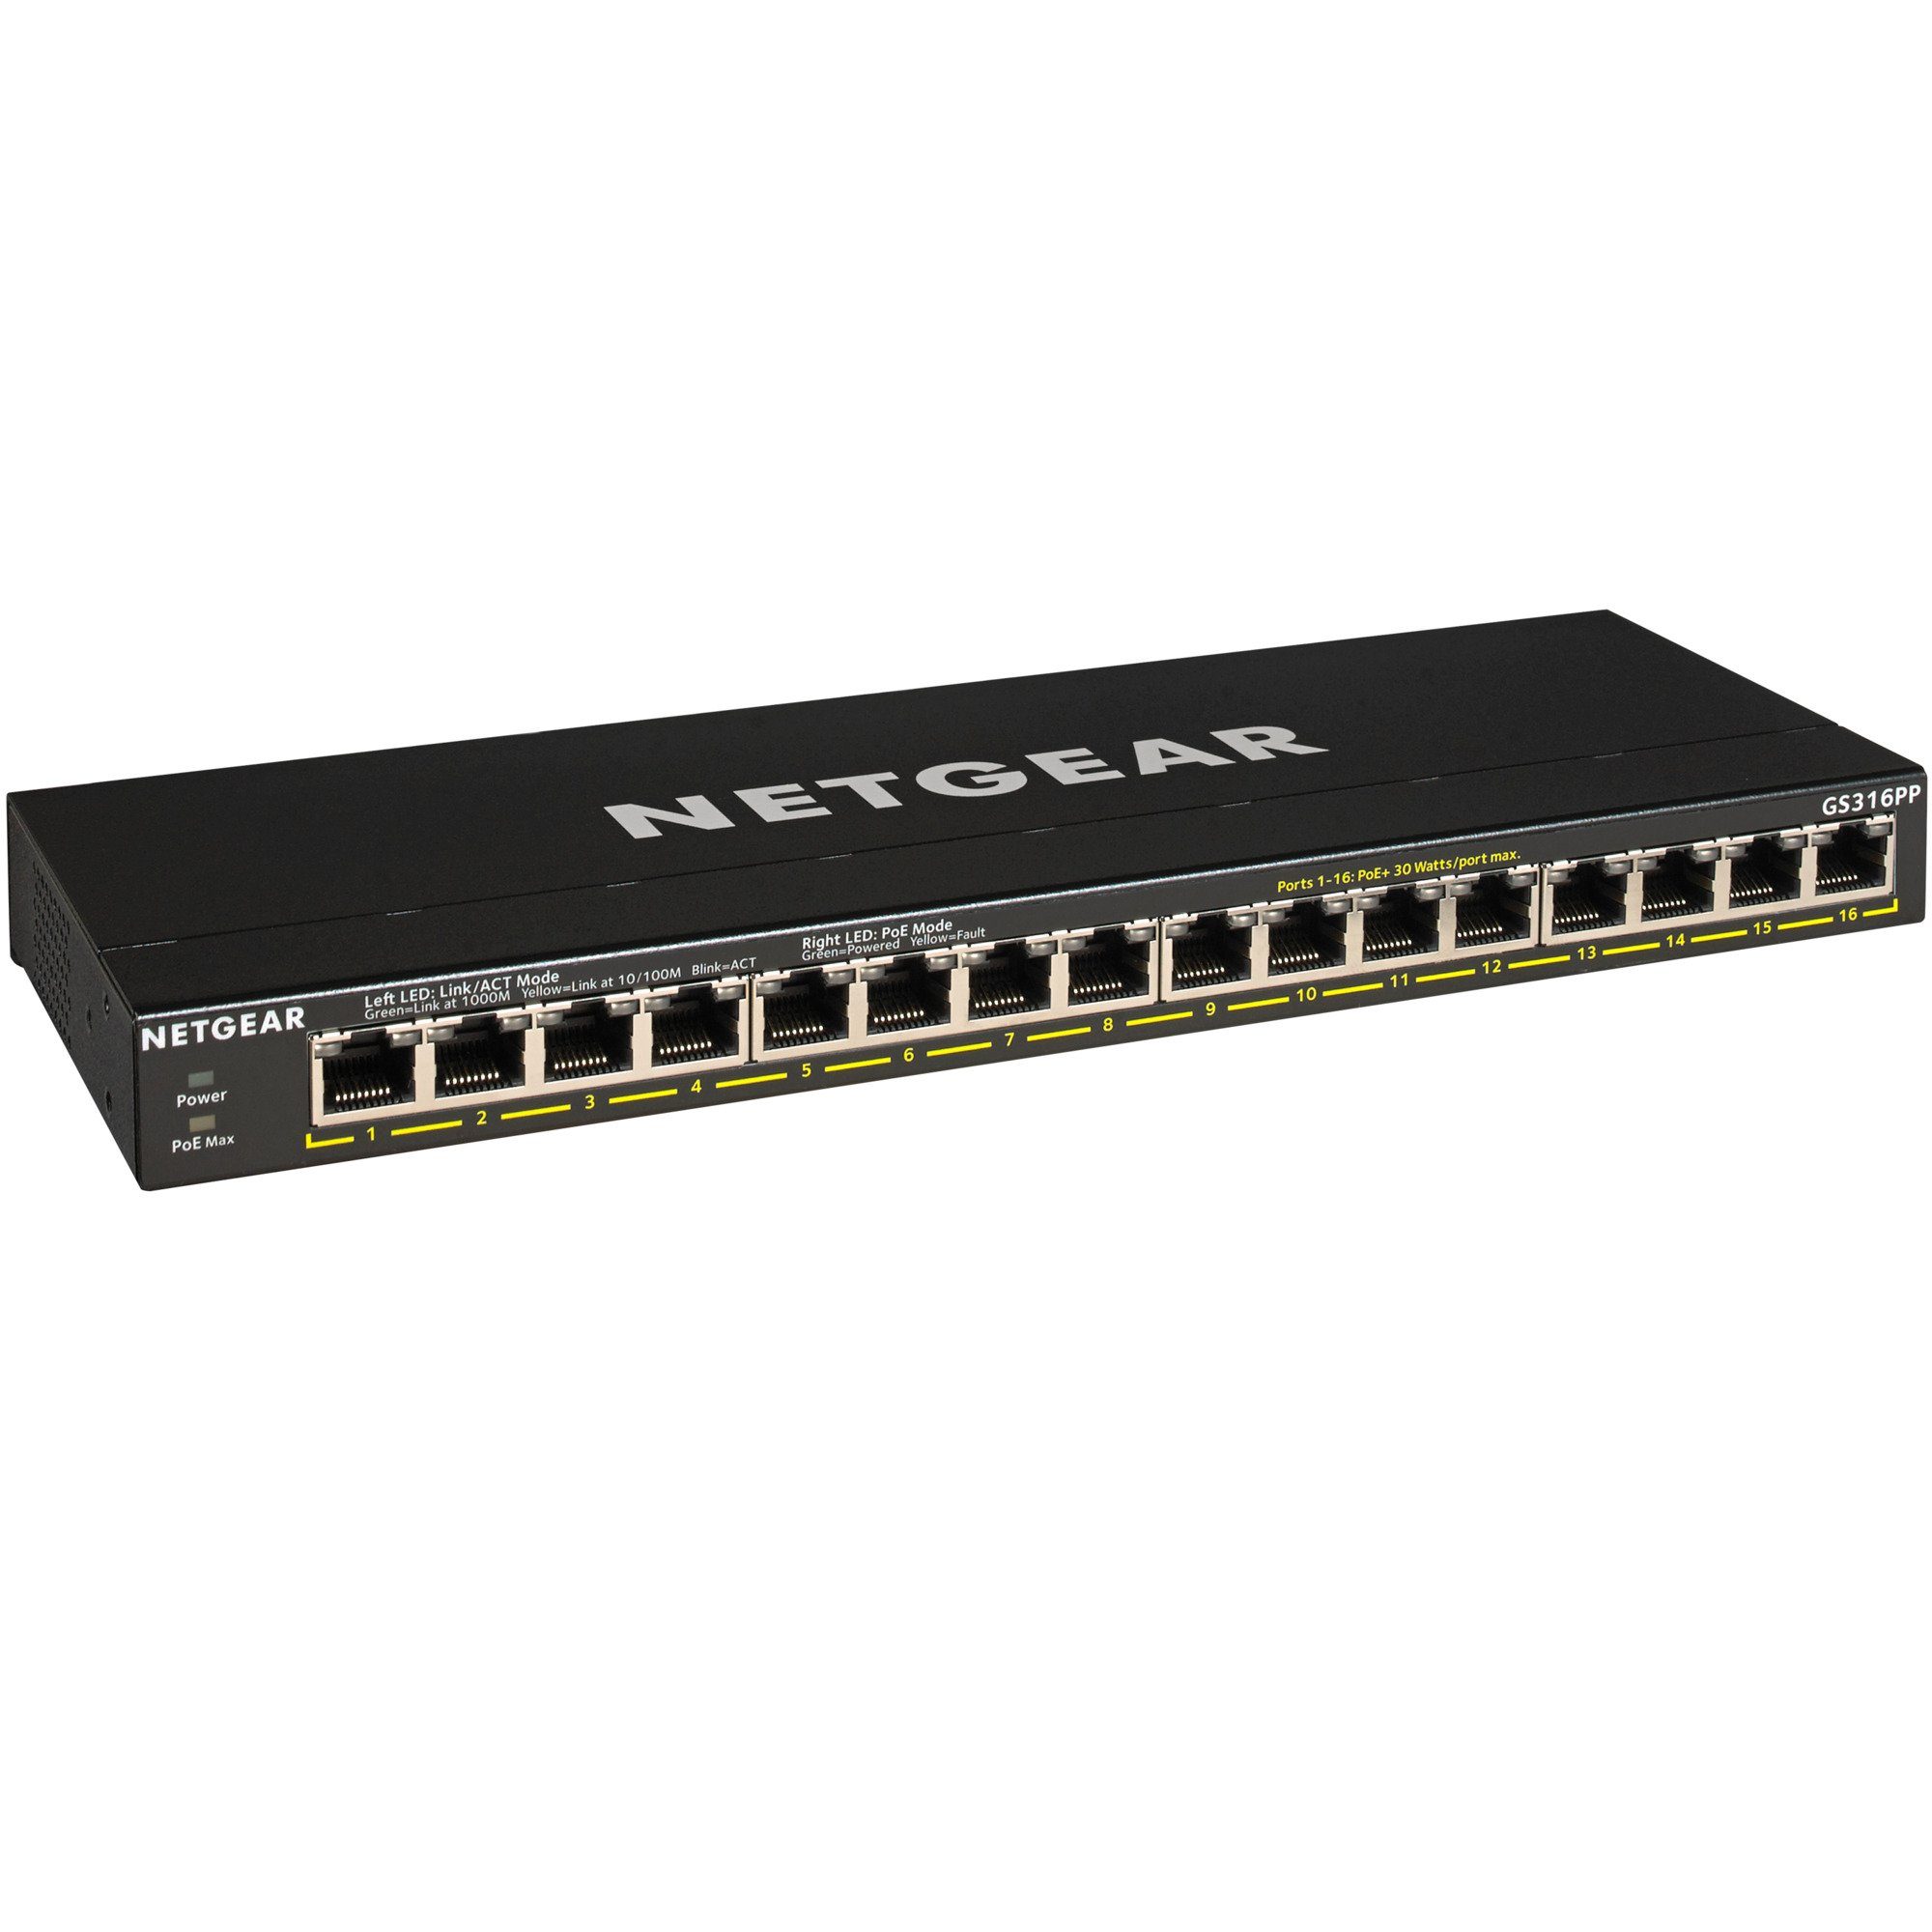 NETGEAR Netgear GS316PP, Switch Netzwerk-Switch | Router